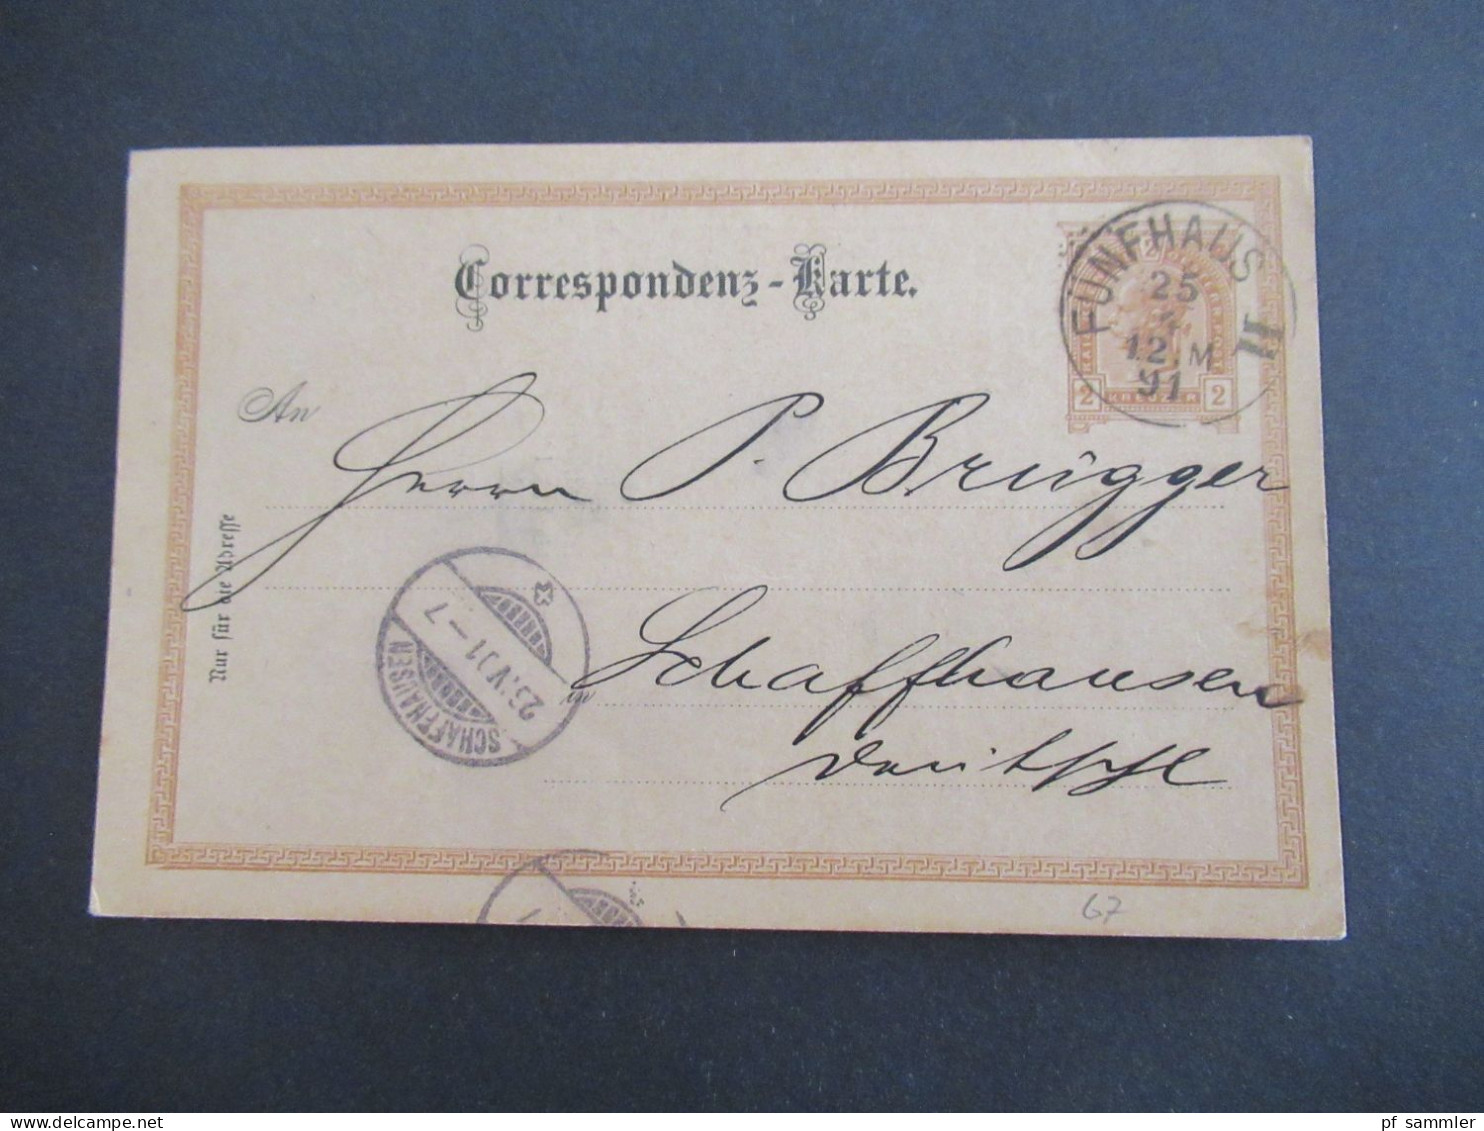 Österreich 1891 GA 2 Kreuzer Bedruckte PK Géza Baneth, Weingrosshandlung Wien Stempel Fünfhaus II - Schaffhausen Schweiz - Cartoline